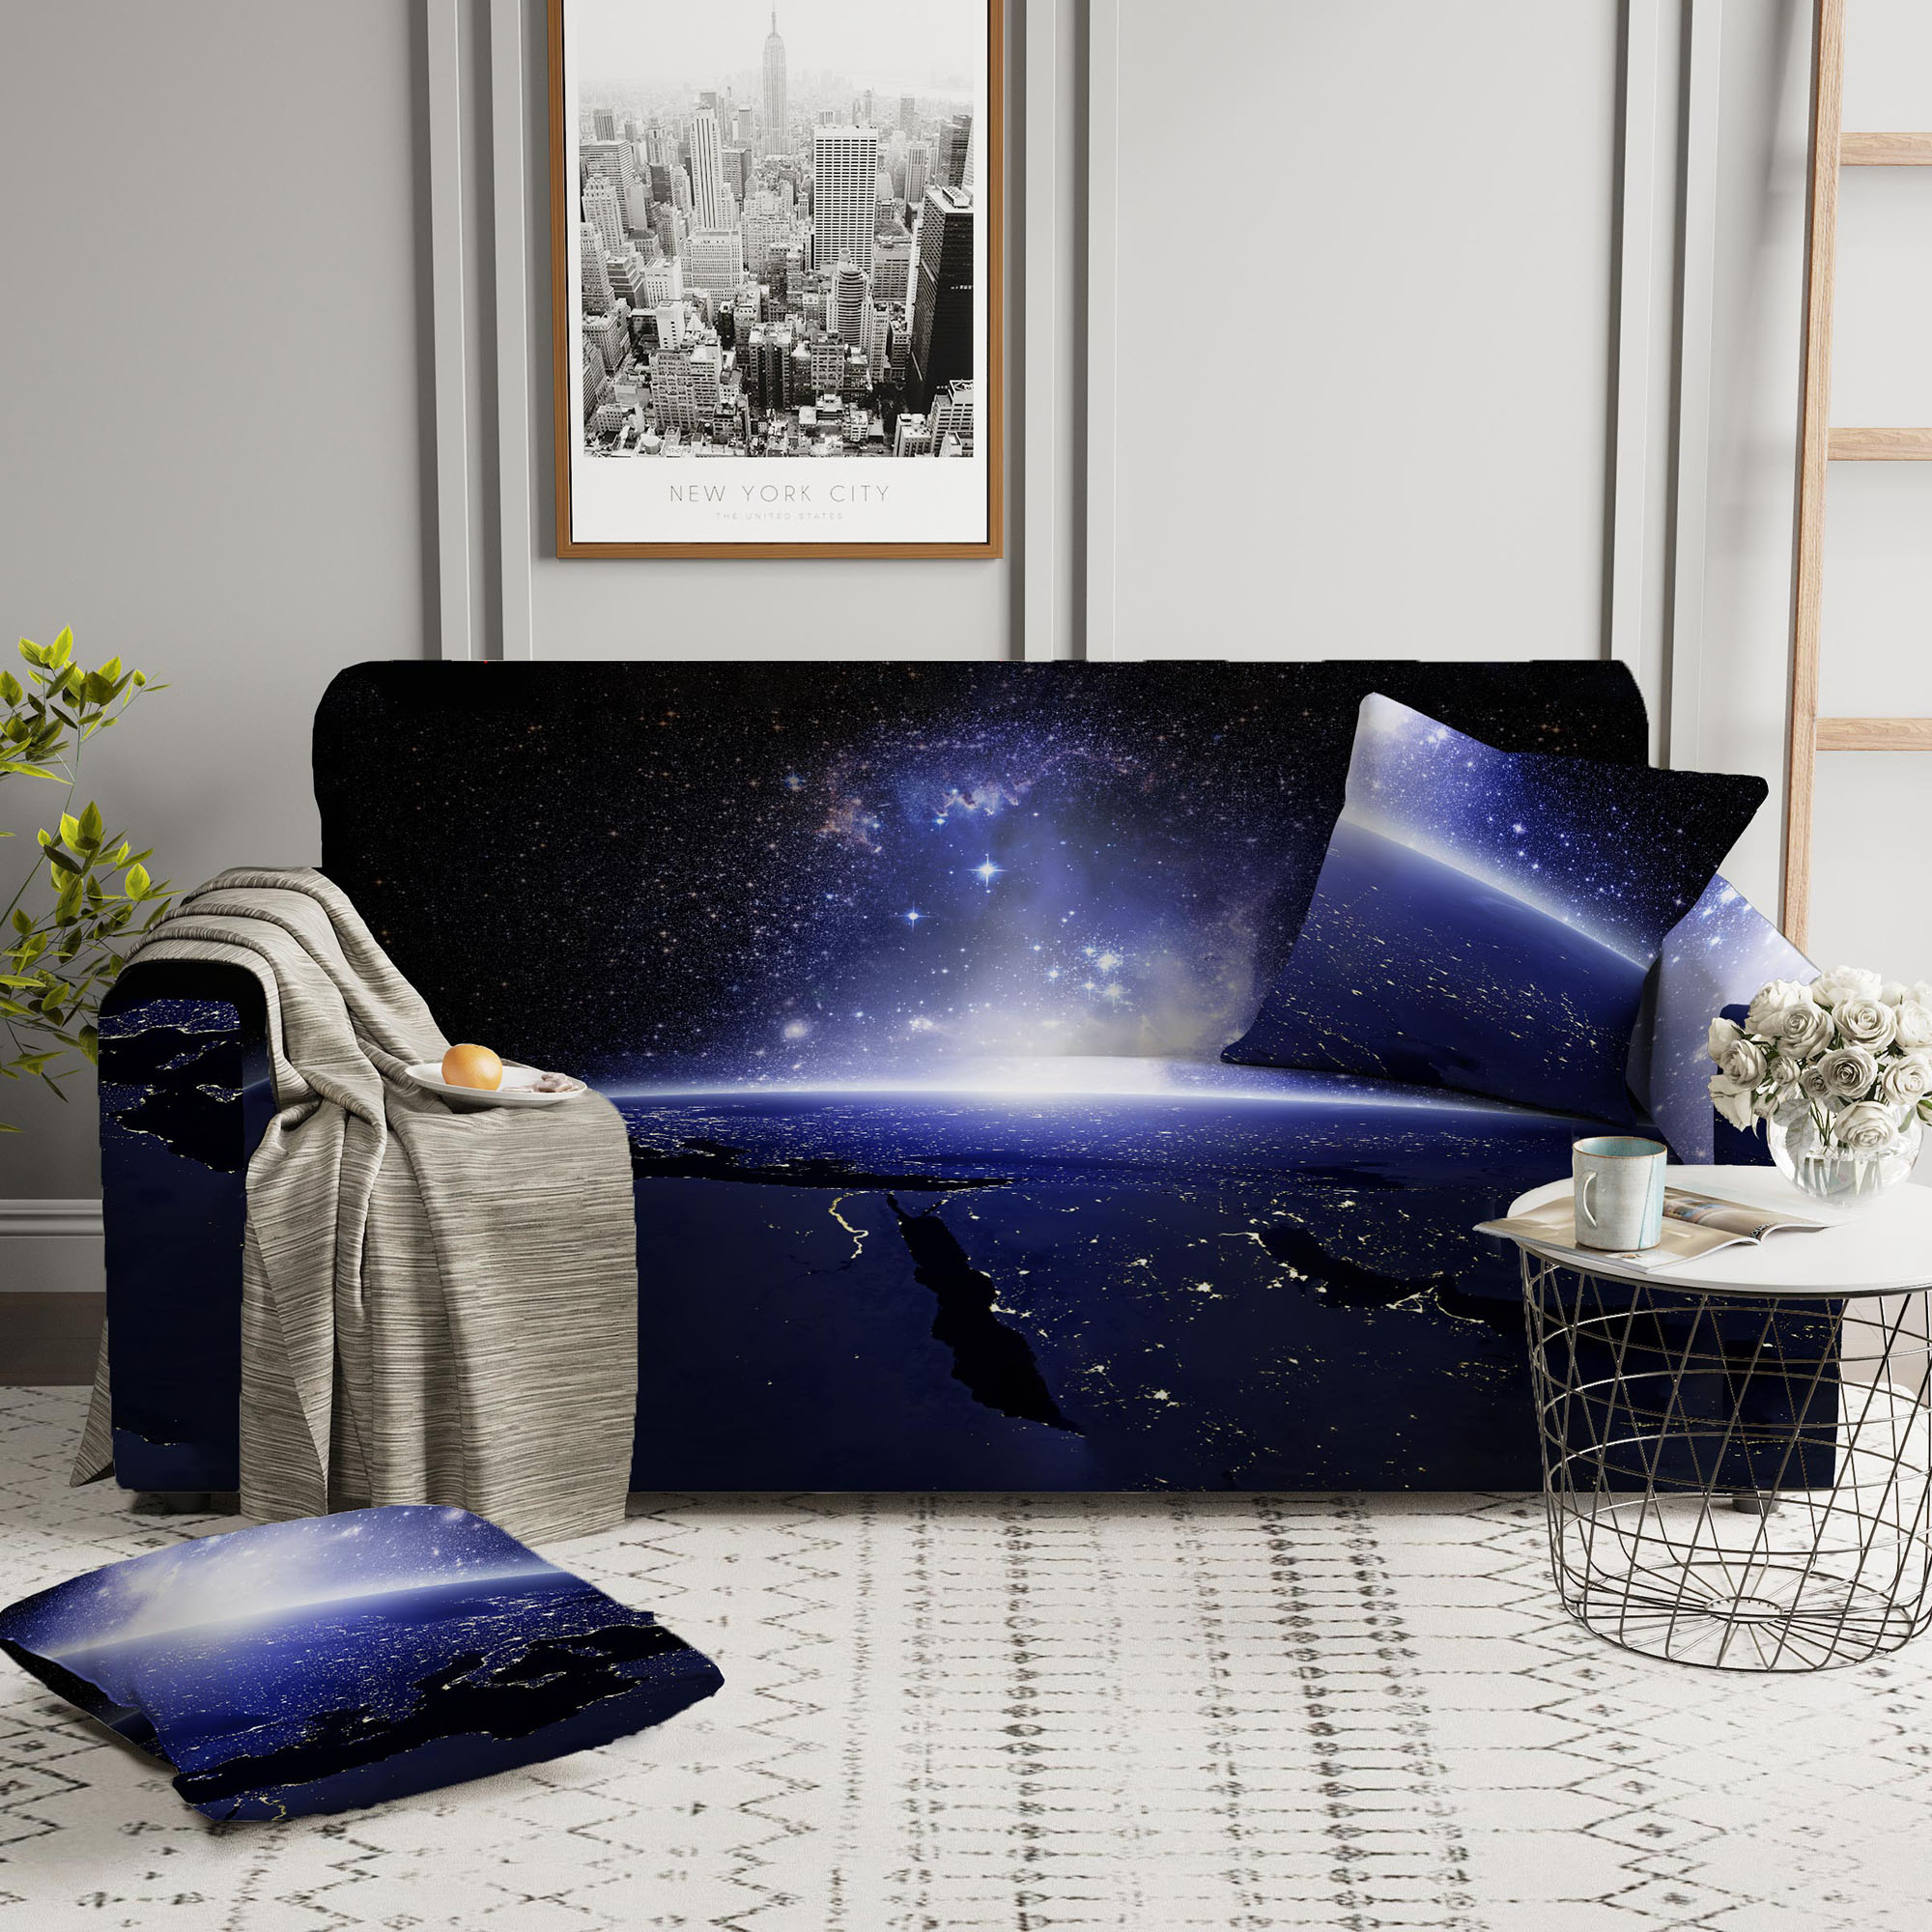 Чехлы для мебели и подушек Стильный Дом Чехол на диван Tawnie цвет: синий (Двухместный)